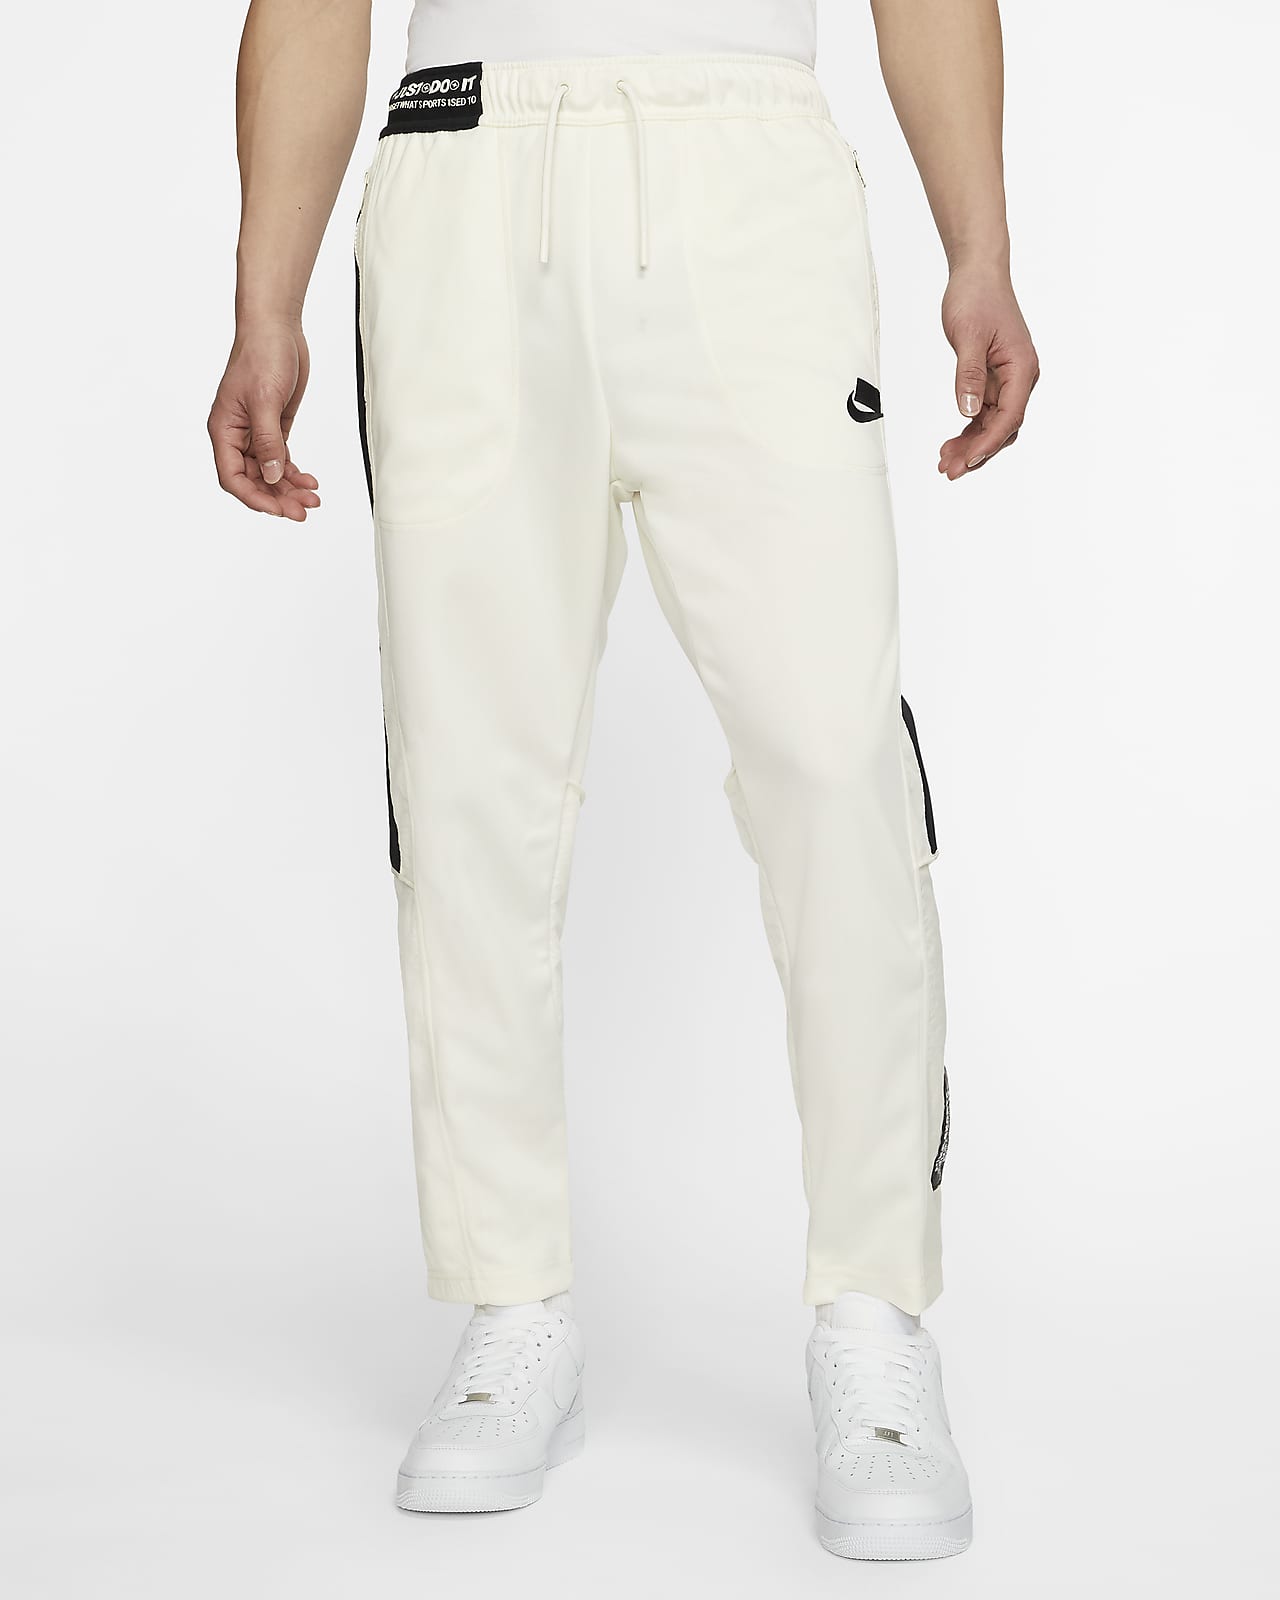 Nike Sportswear NSW Pants. JP